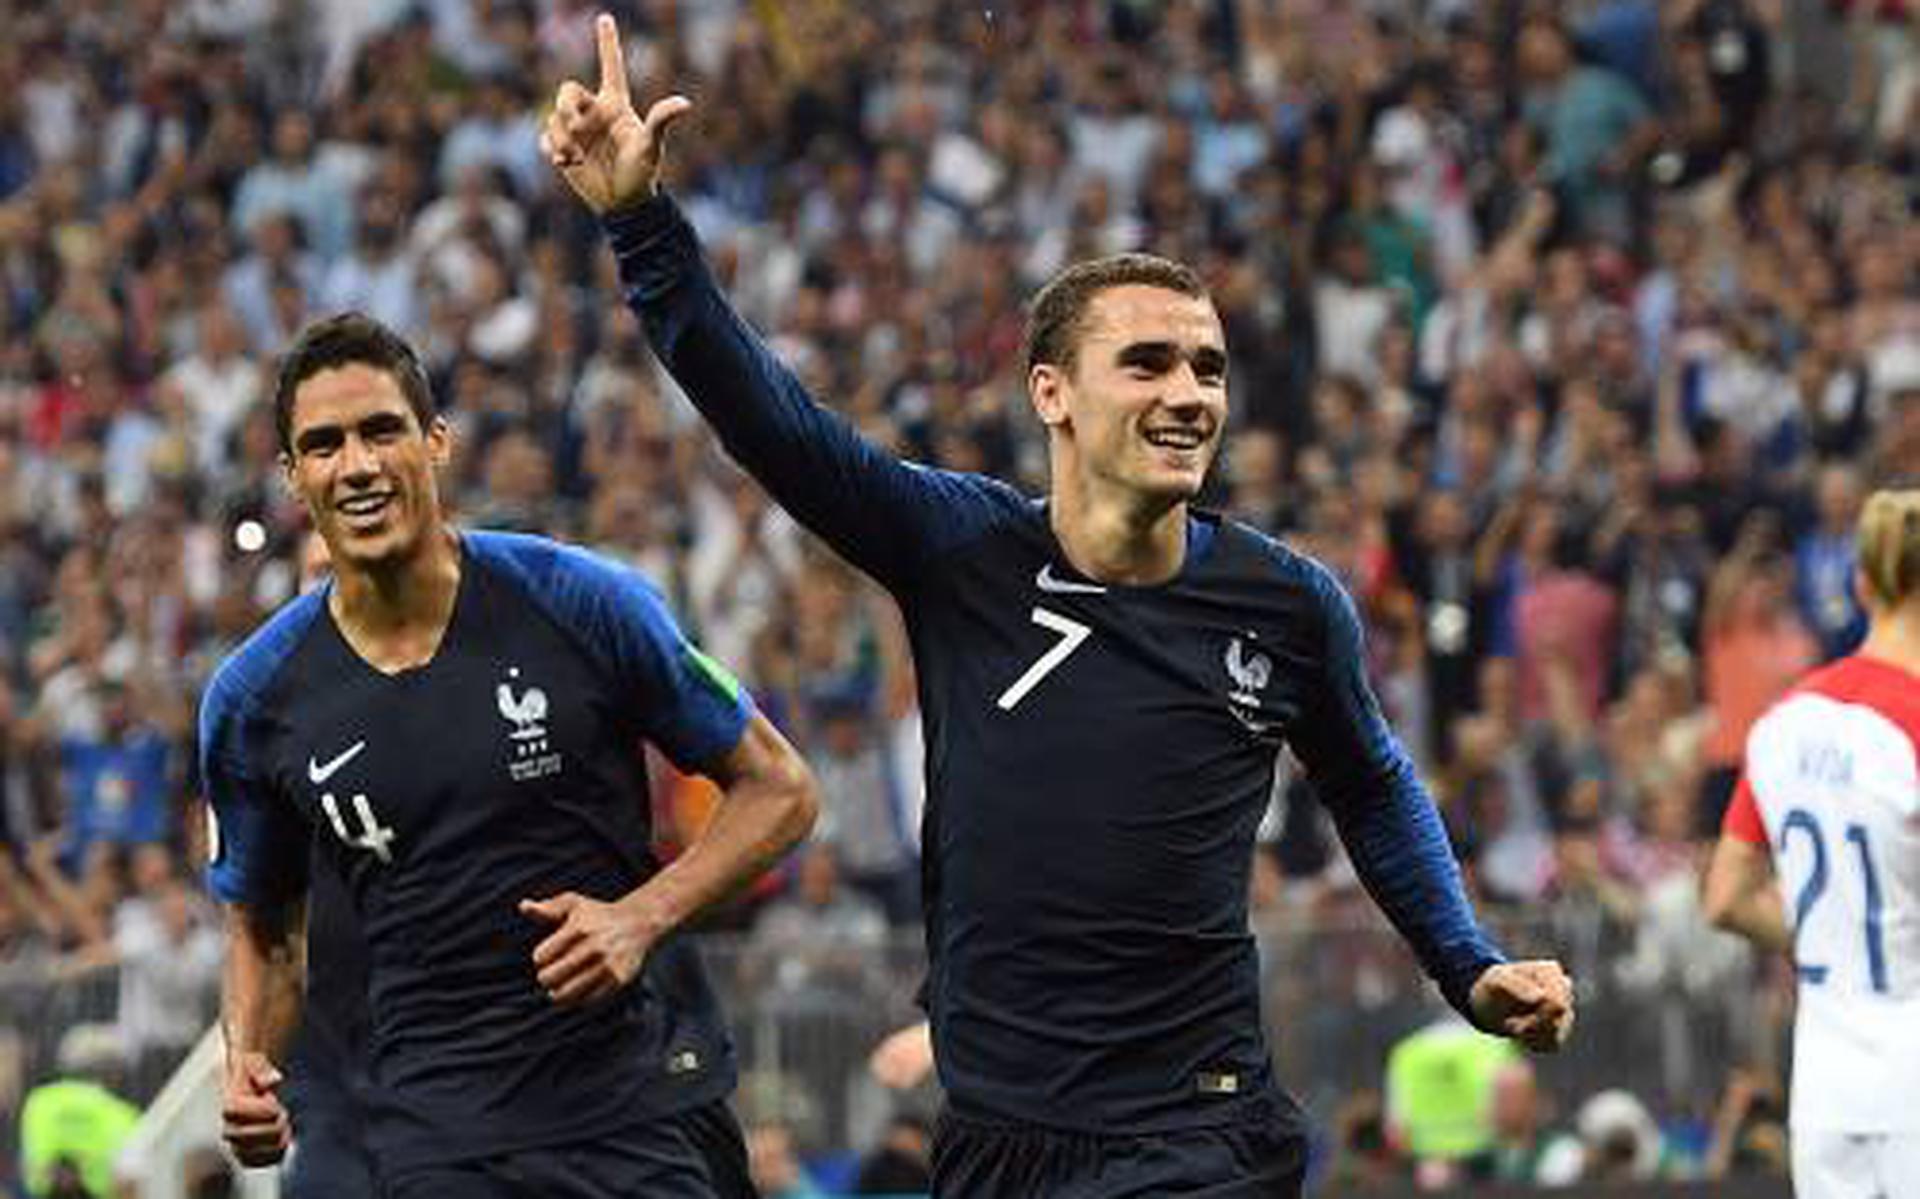 Zakje Spookachtig Kennis maken Frankrijk verslaat Kroatië in WK-finale: 4-2 - Dagblad van het Noorden